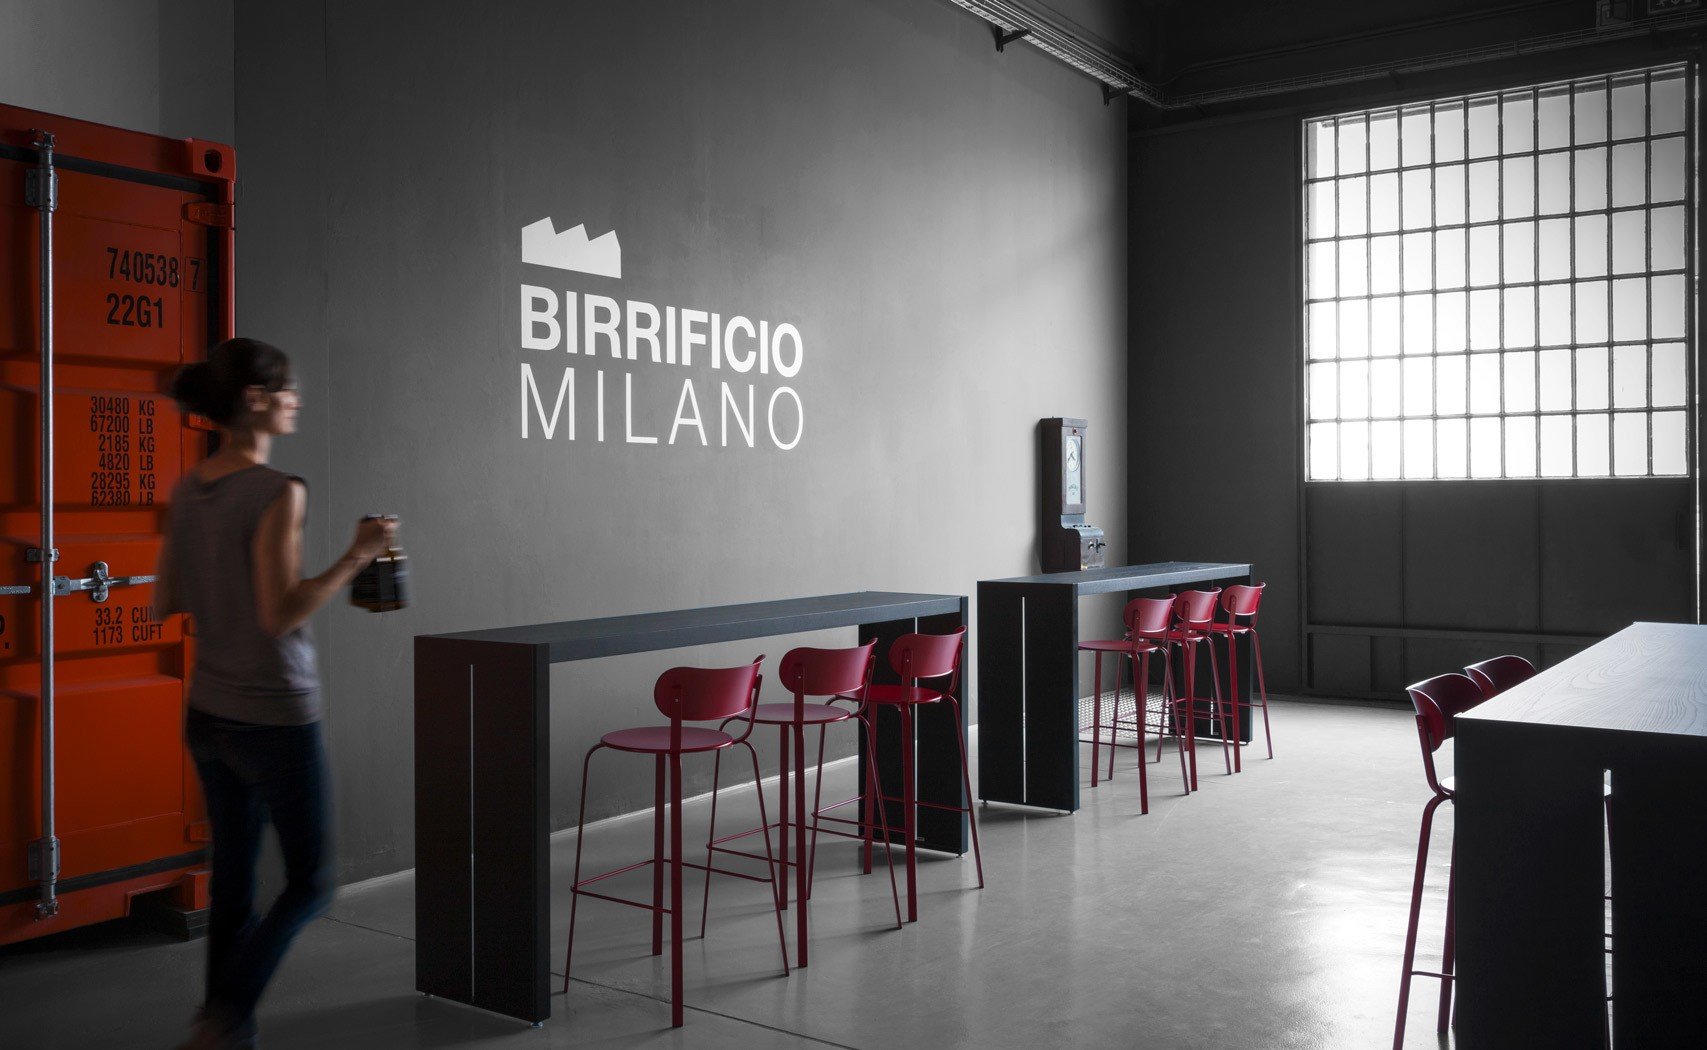 Birrificio Milano brewery from Italy